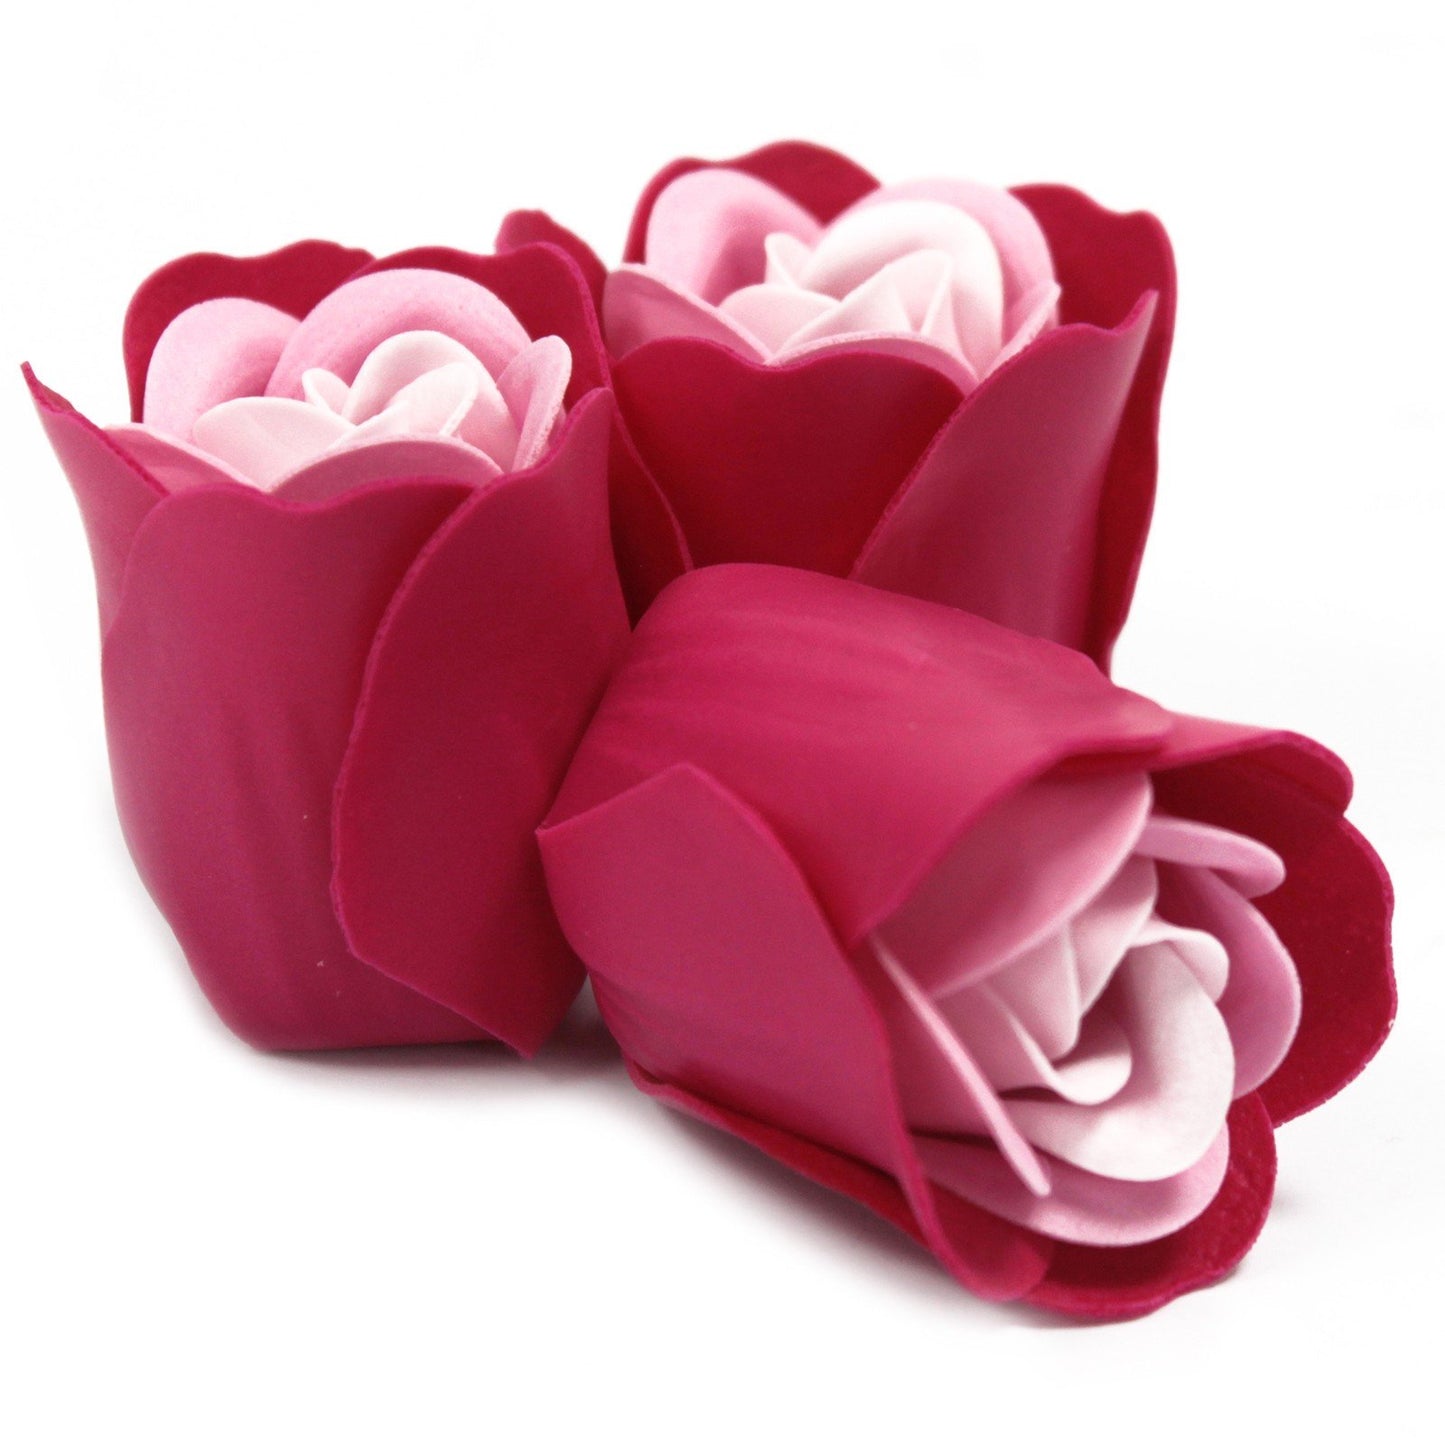 Luxury Soap Flowers | 3 Rose Soap Flowers